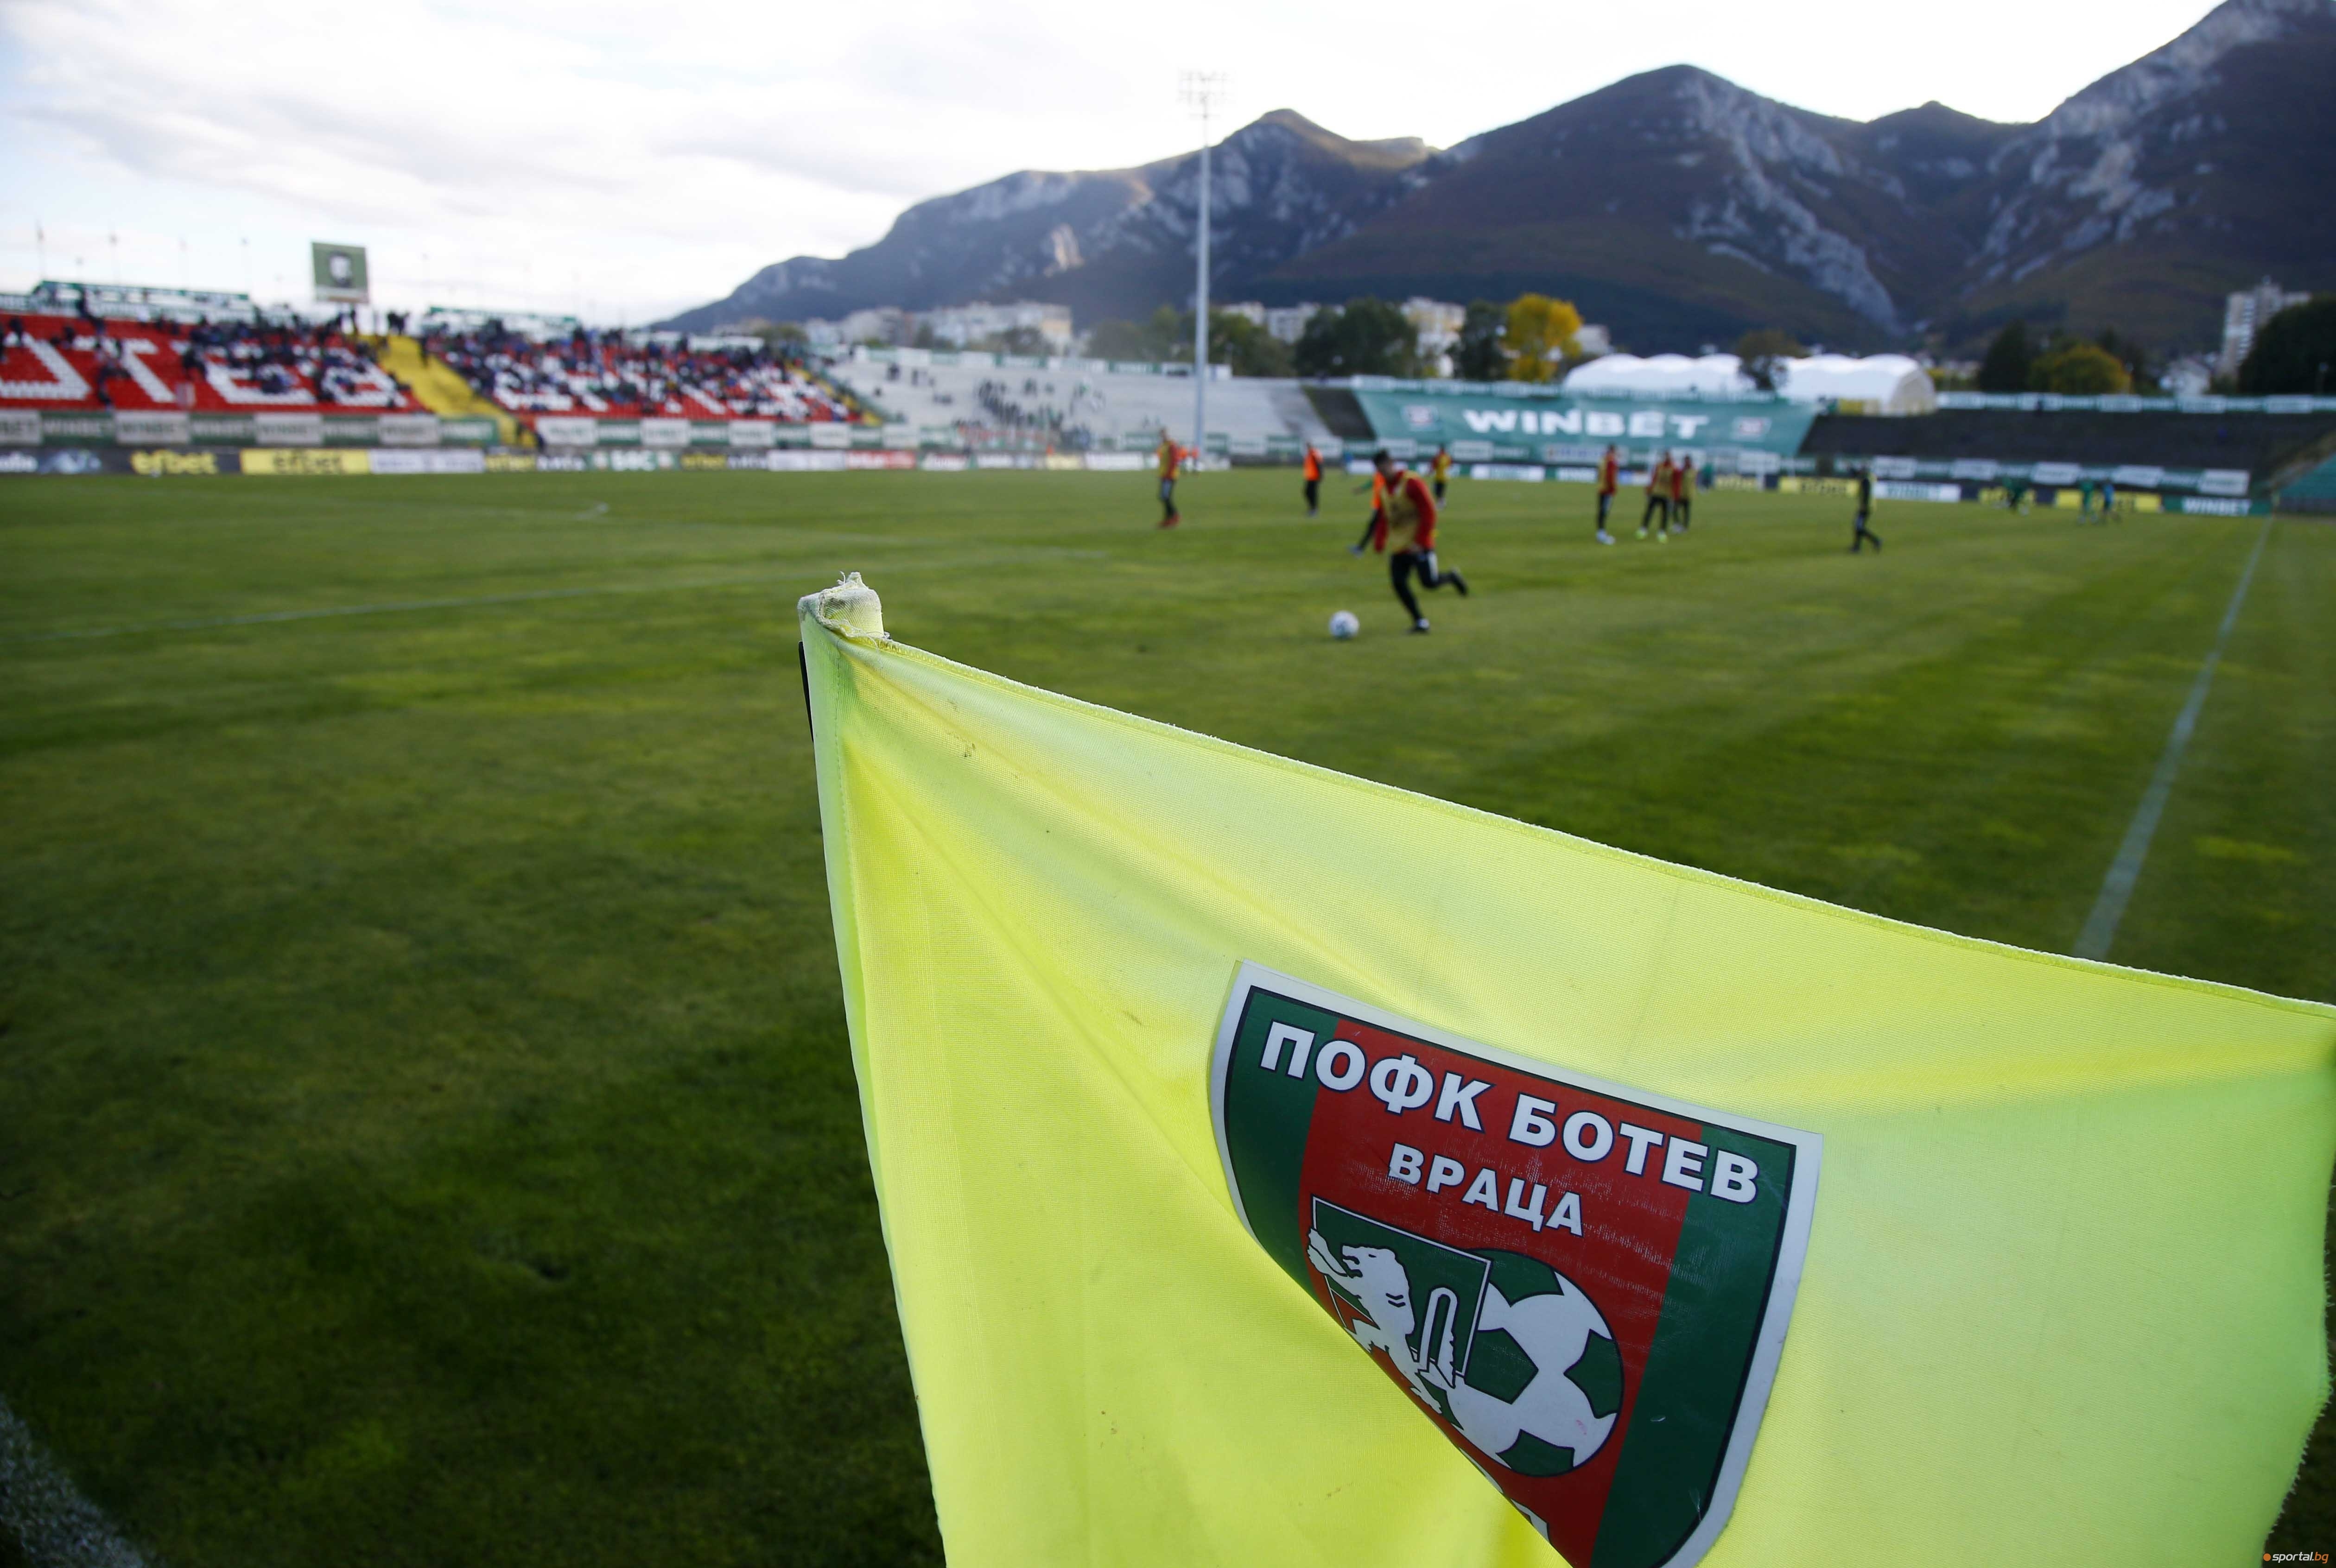 Ръководството на Ботев (Враца) продължава с новостите по стадиона в